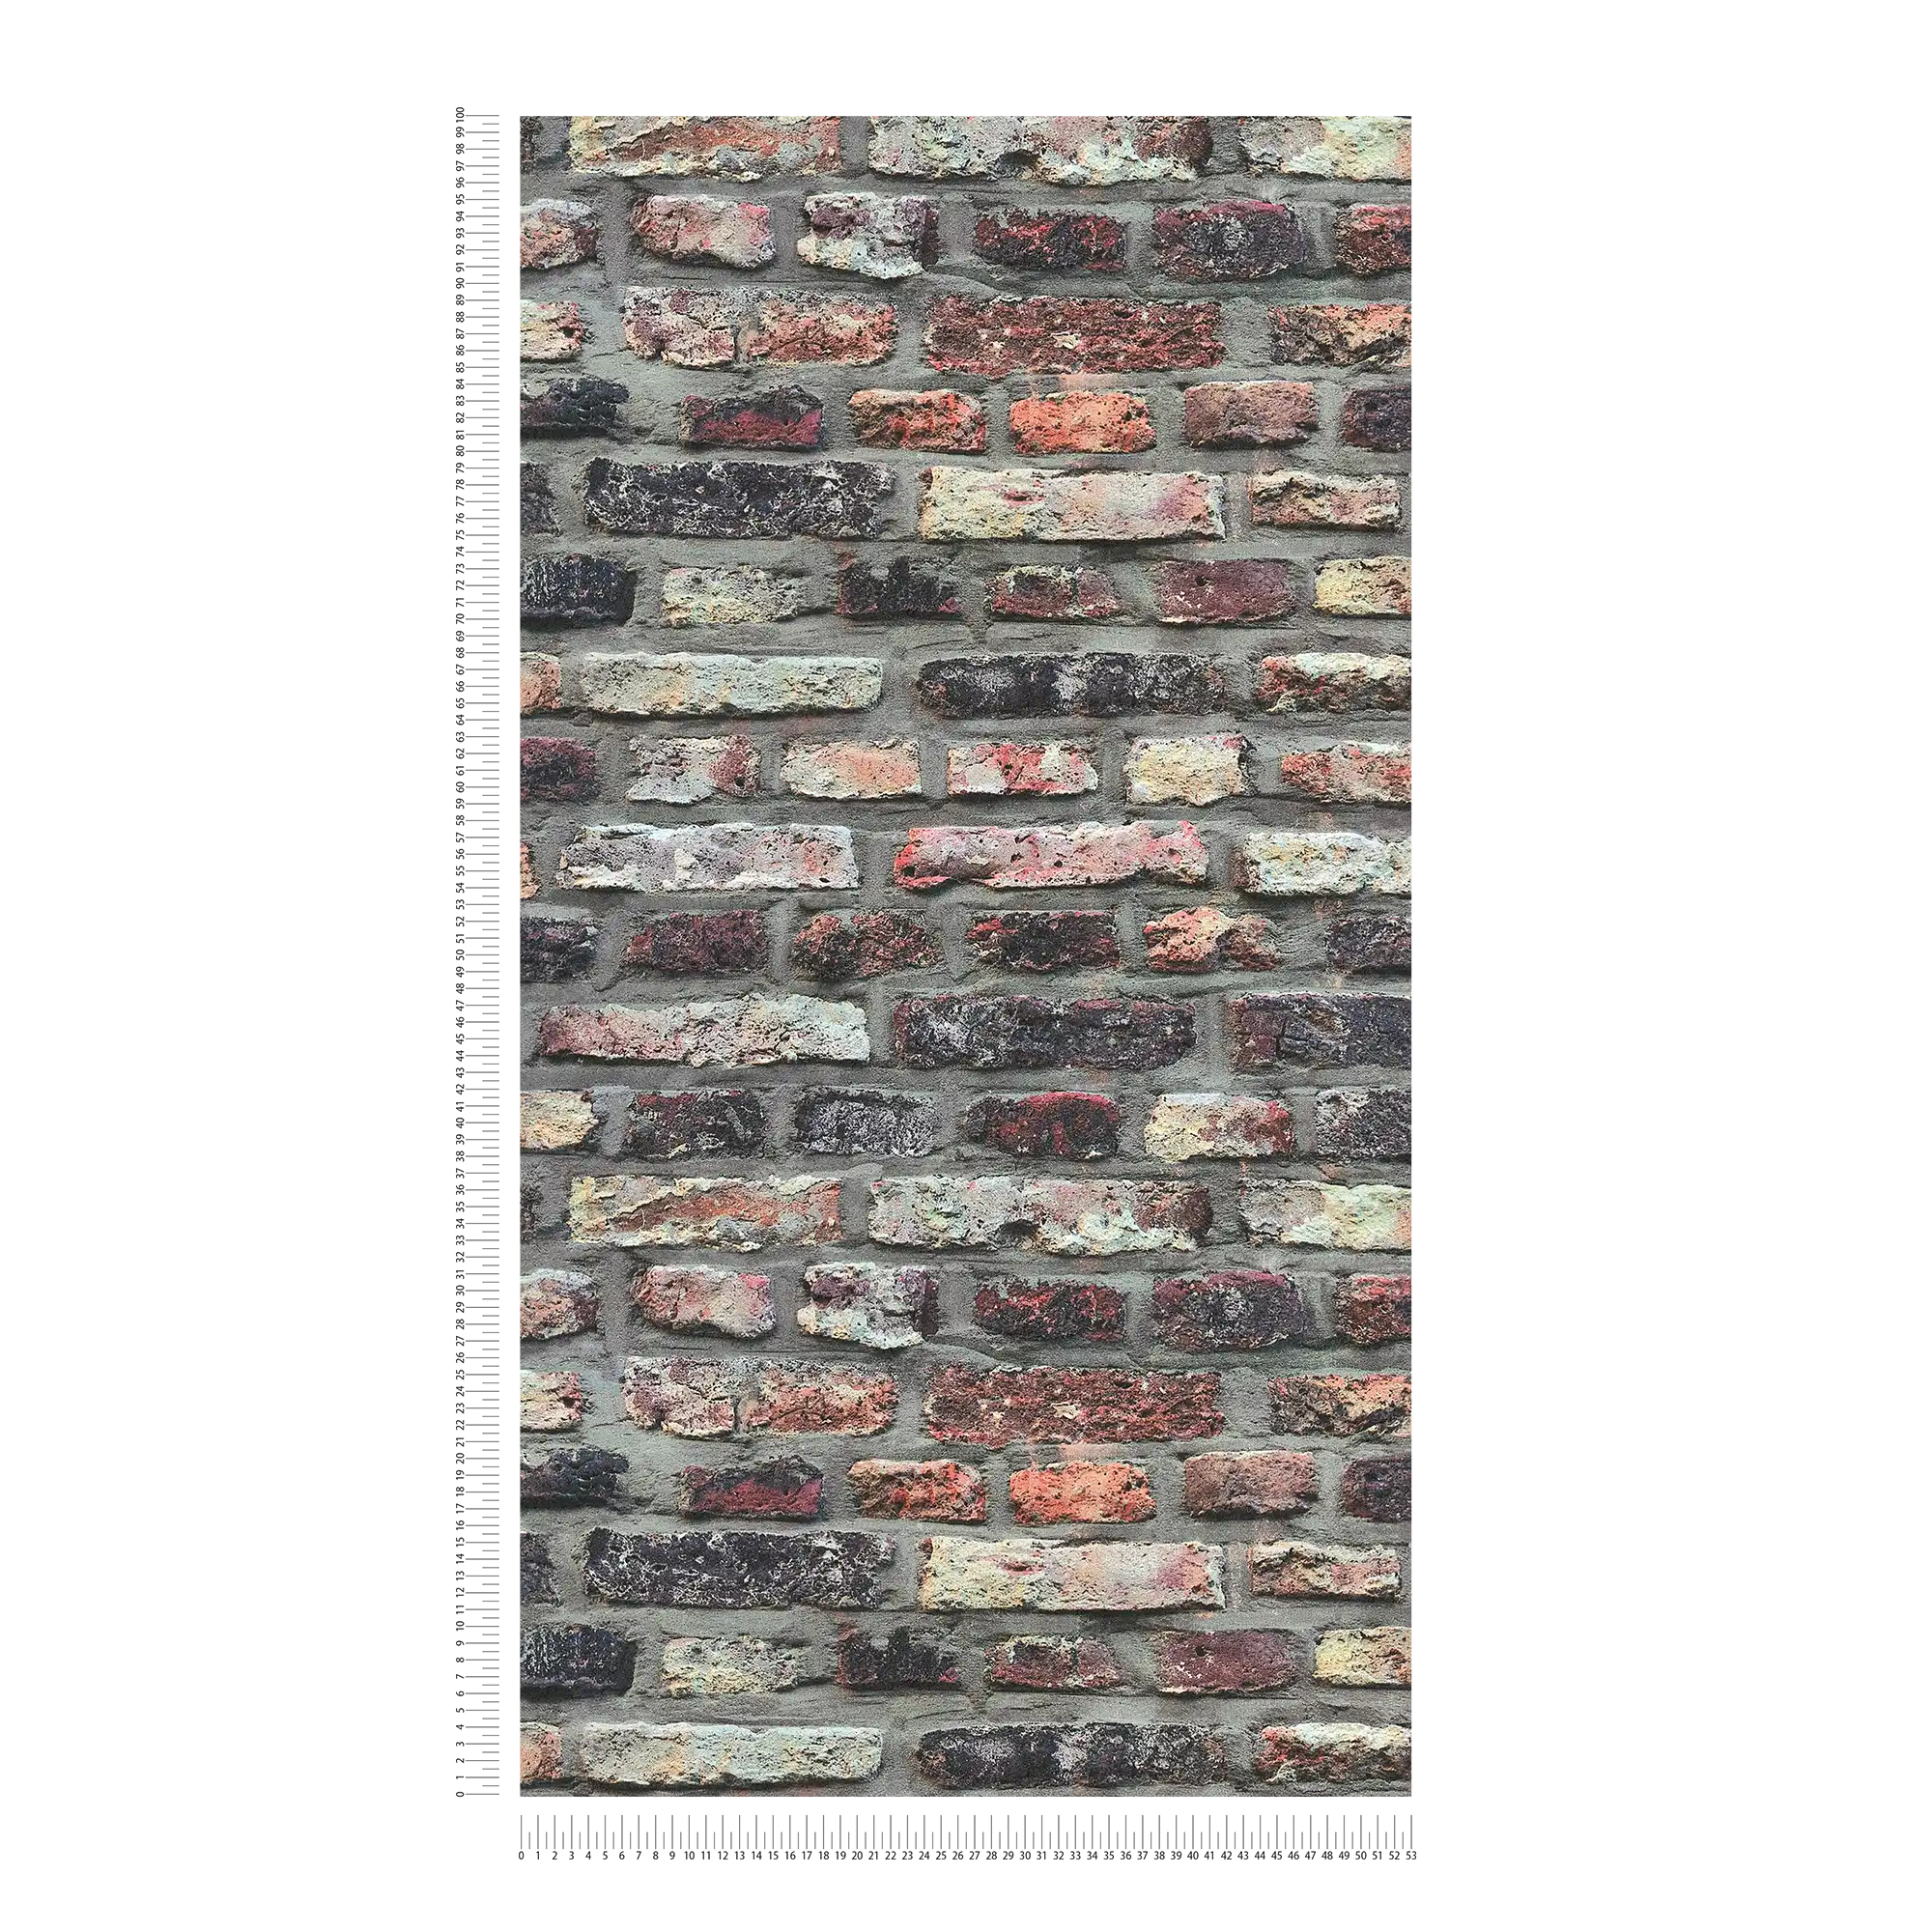             Stone wallpaper rustic brickwork in industrial style - brown, grey, beige
        